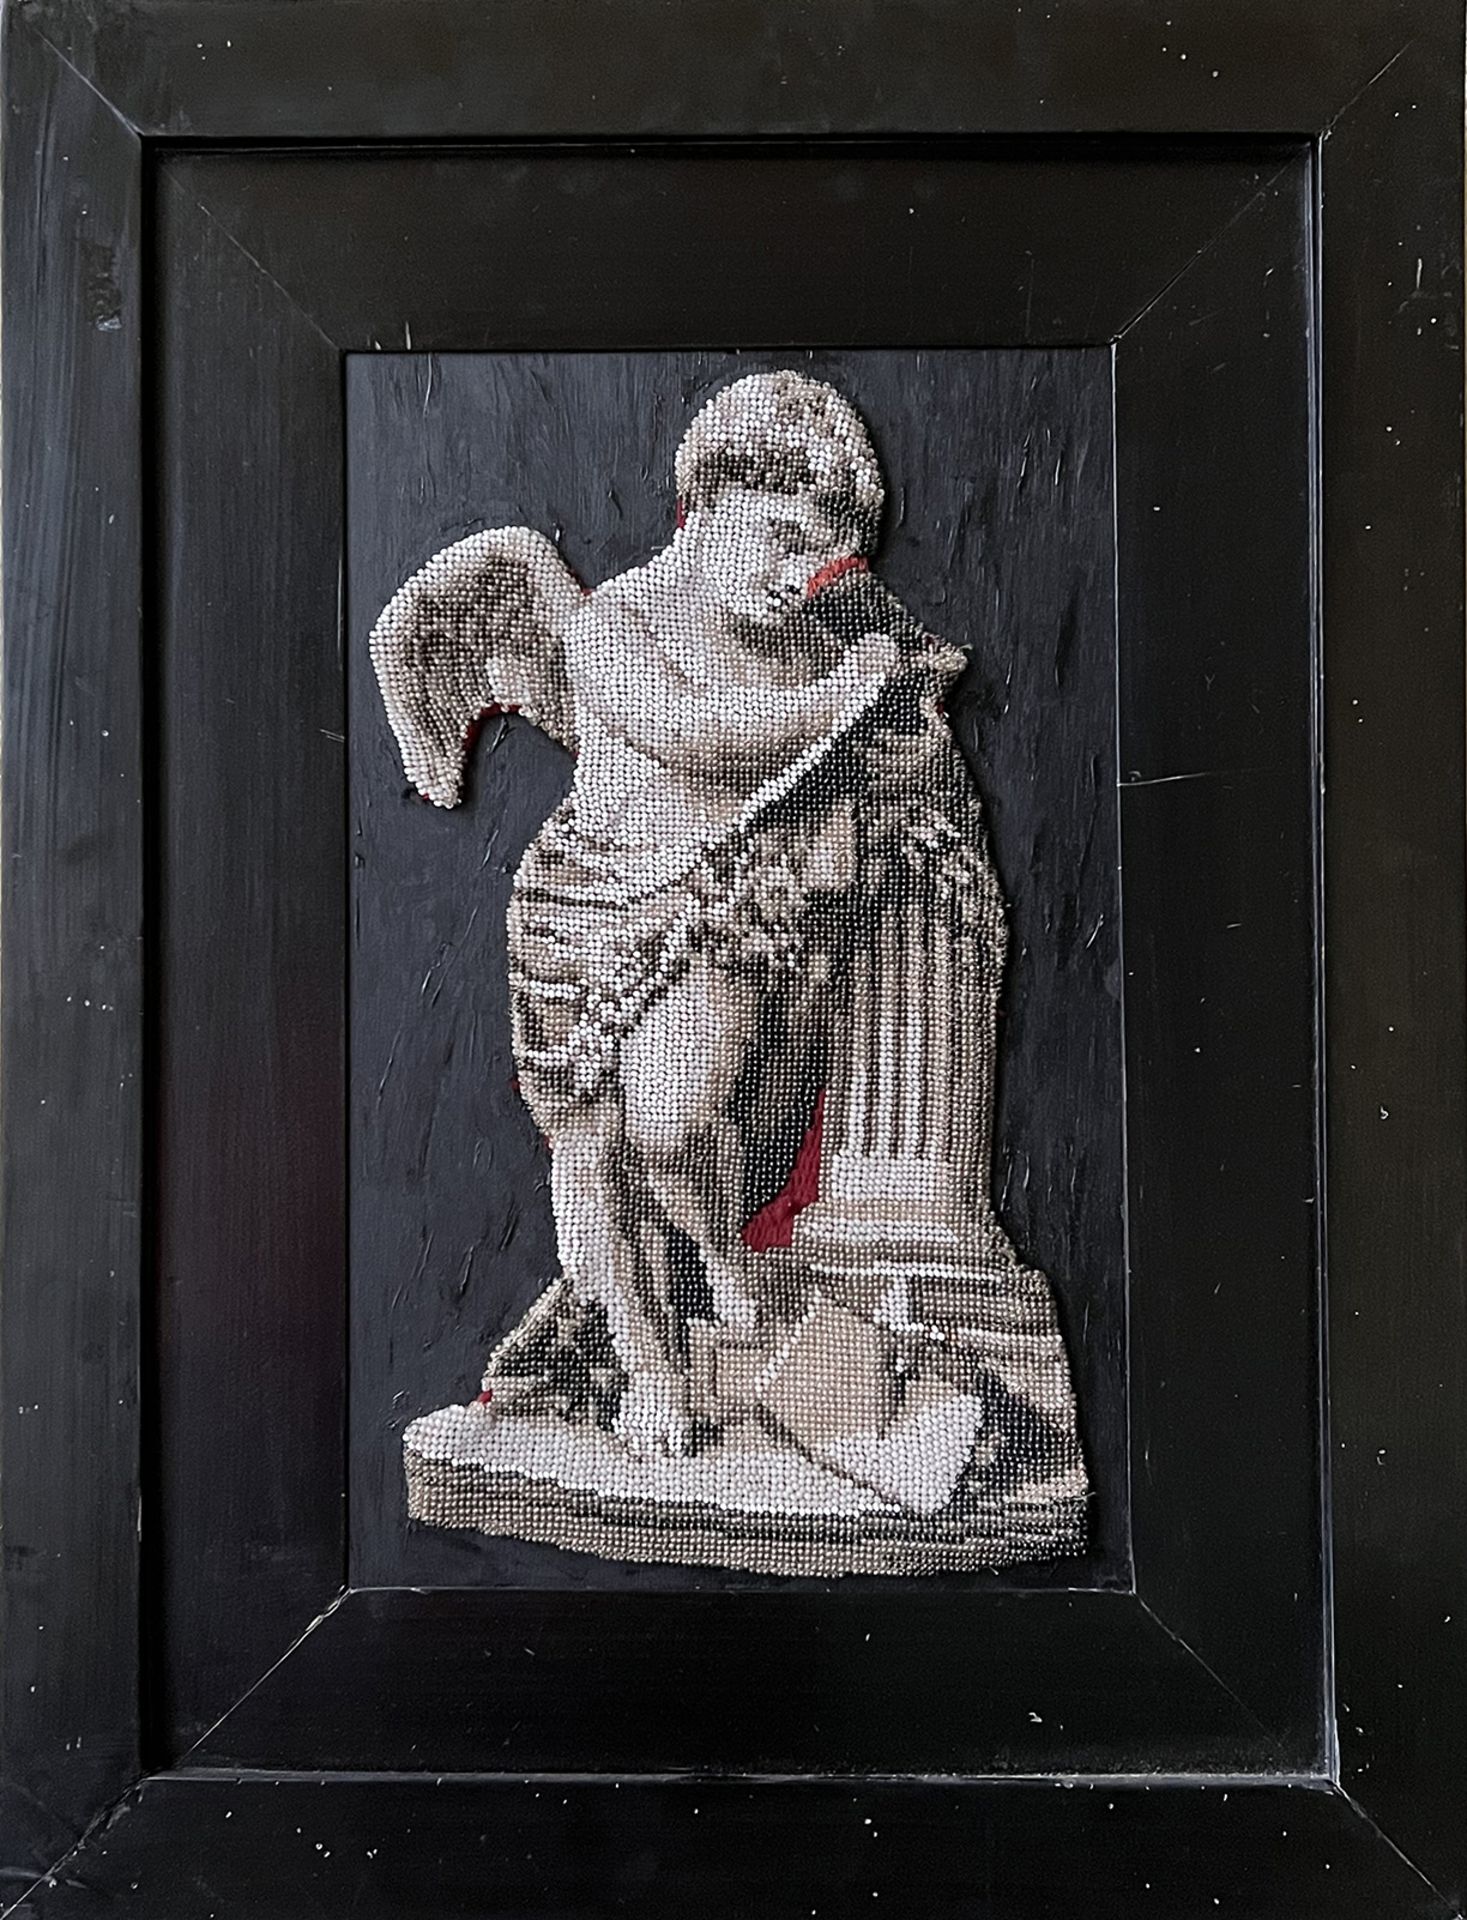 Glasperlenbild, 19. Jh., Engel an Säule stehend, mit Glasperlen gefädelt, teils auf Stoff gelegt und